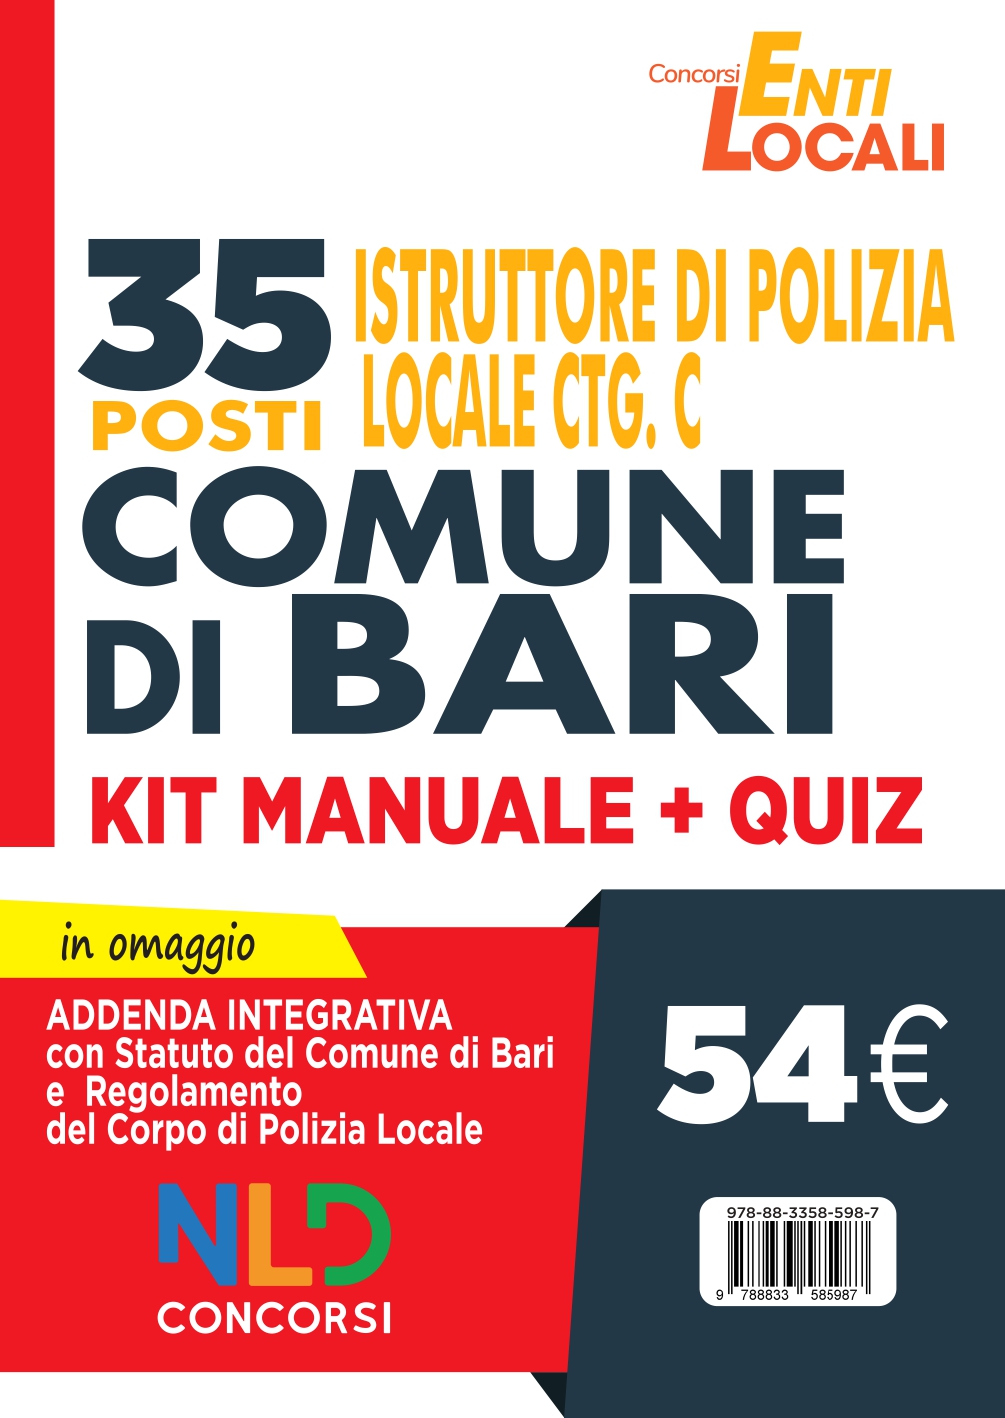 Comune di Bari: 35 Posti Polizia Locale Cat. C. Kit Manuale + Quiz per concorso Vigile Urbano